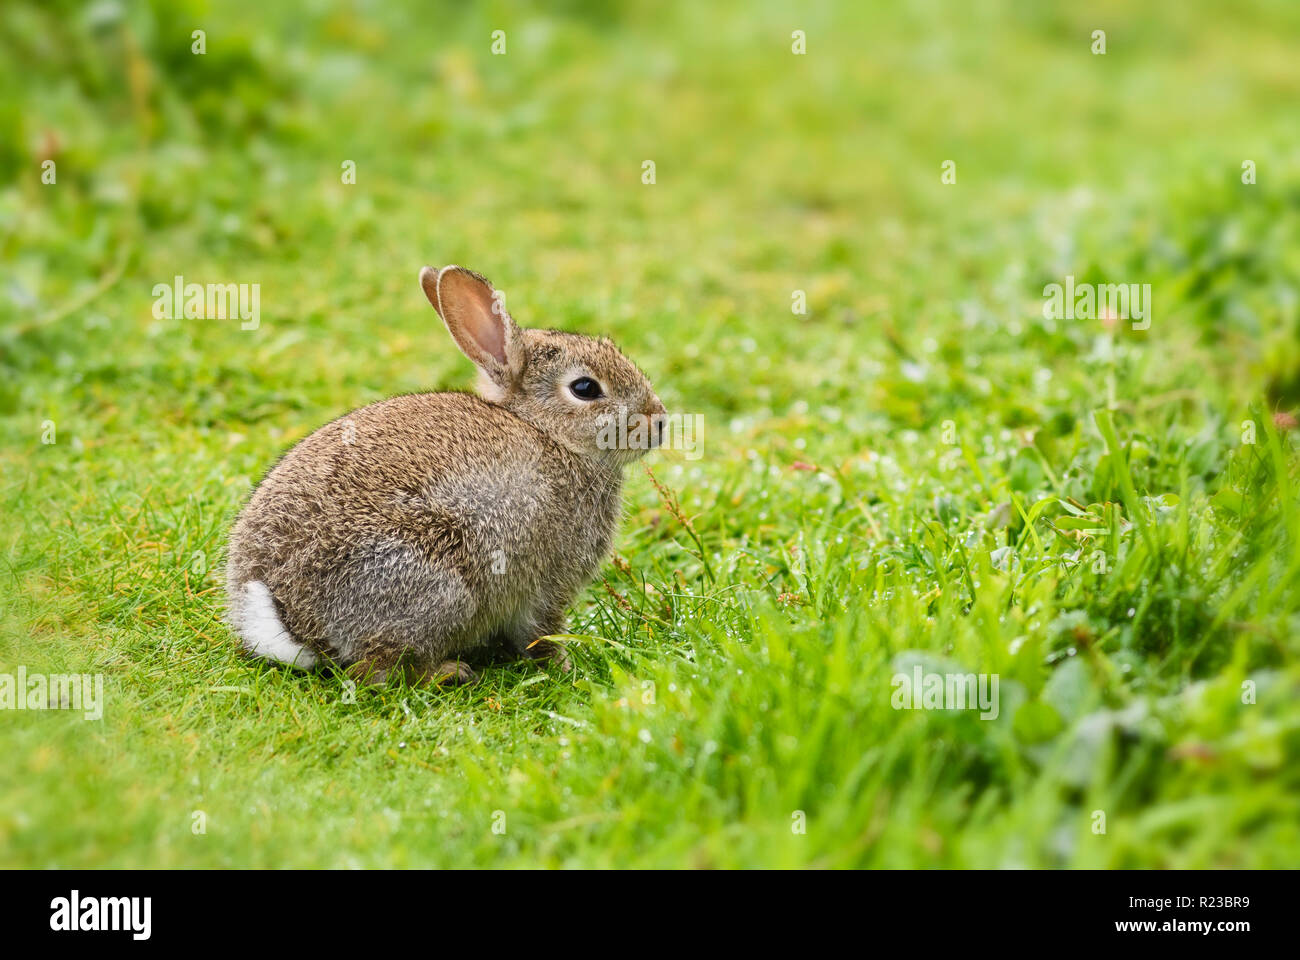 Europäische Kaninchen - Oryctolagus cuniculus, niedliche kleine Säugetier aus europäischen Wiesen und Weideland, Shetlandinseln, UK. Stockfoto